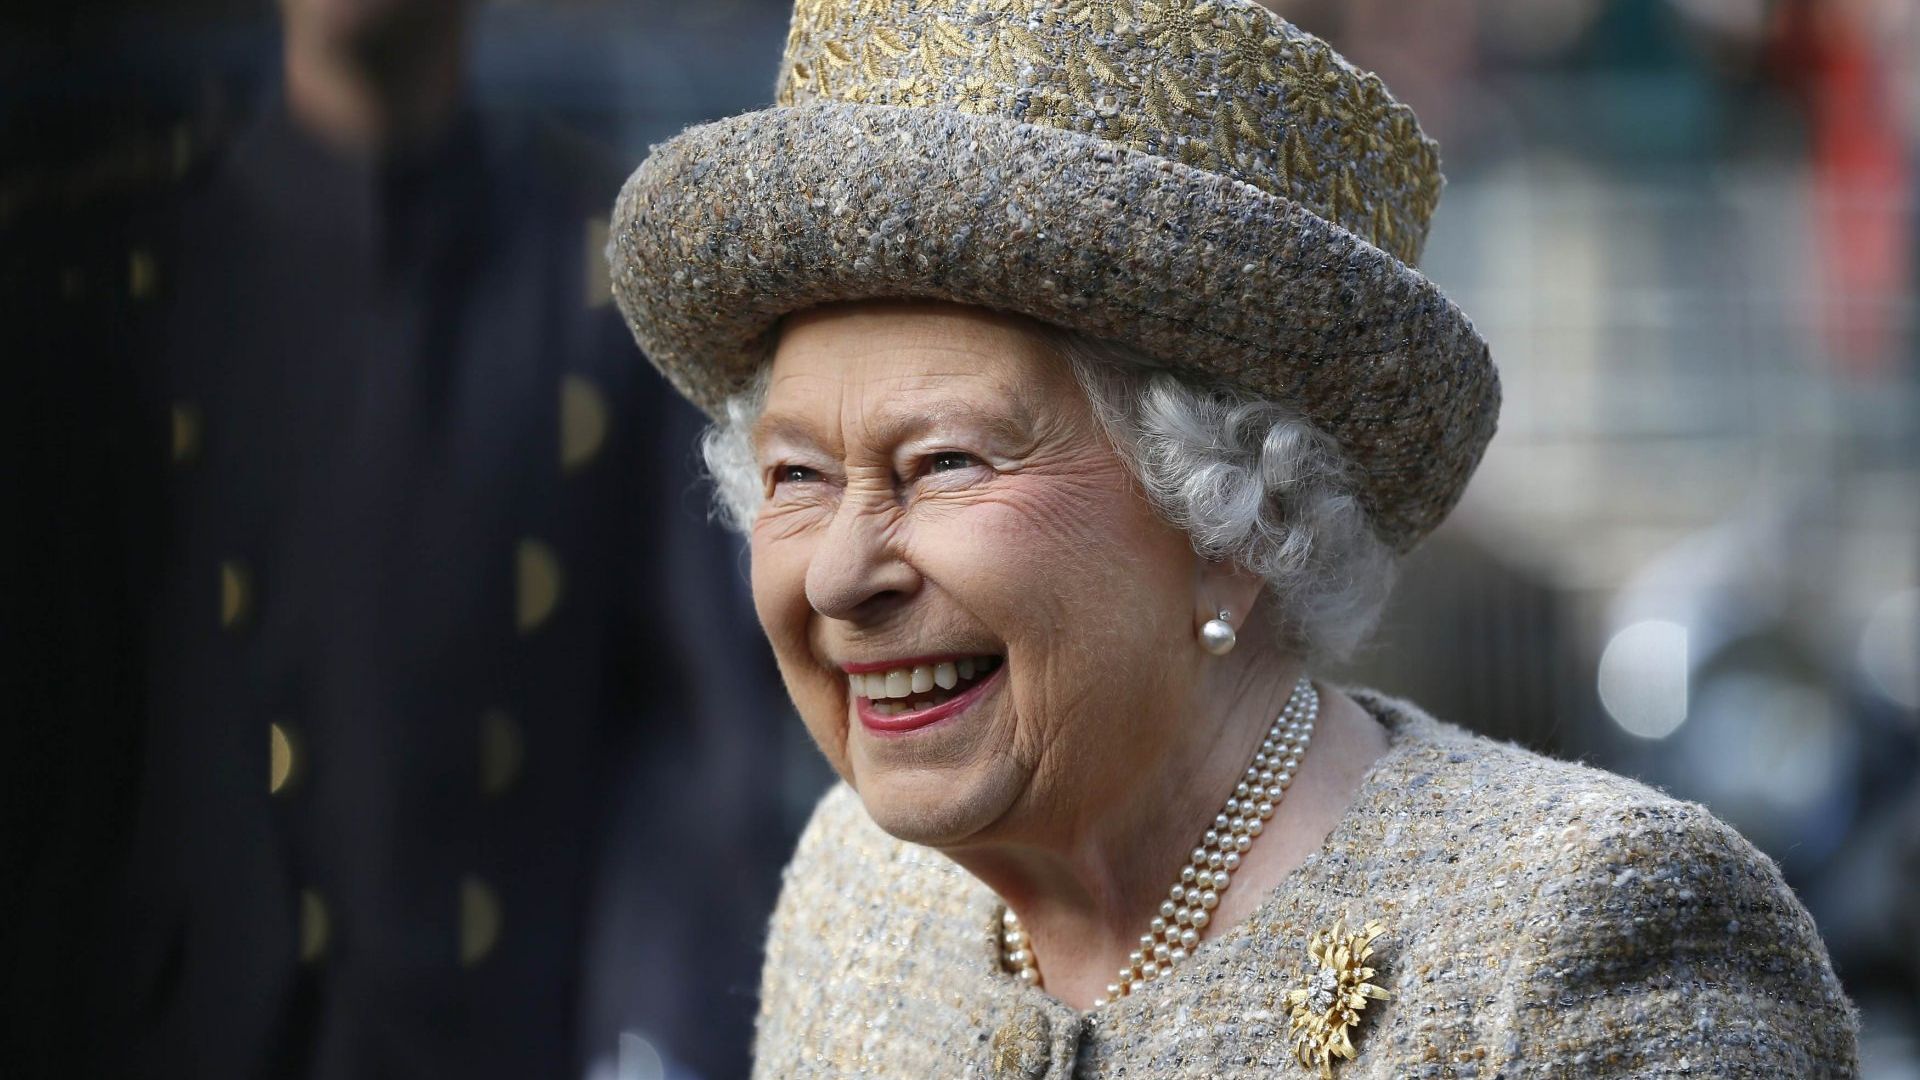 Queen Elizabeth Ii Final Portrait Released Ahead Of Funeral 